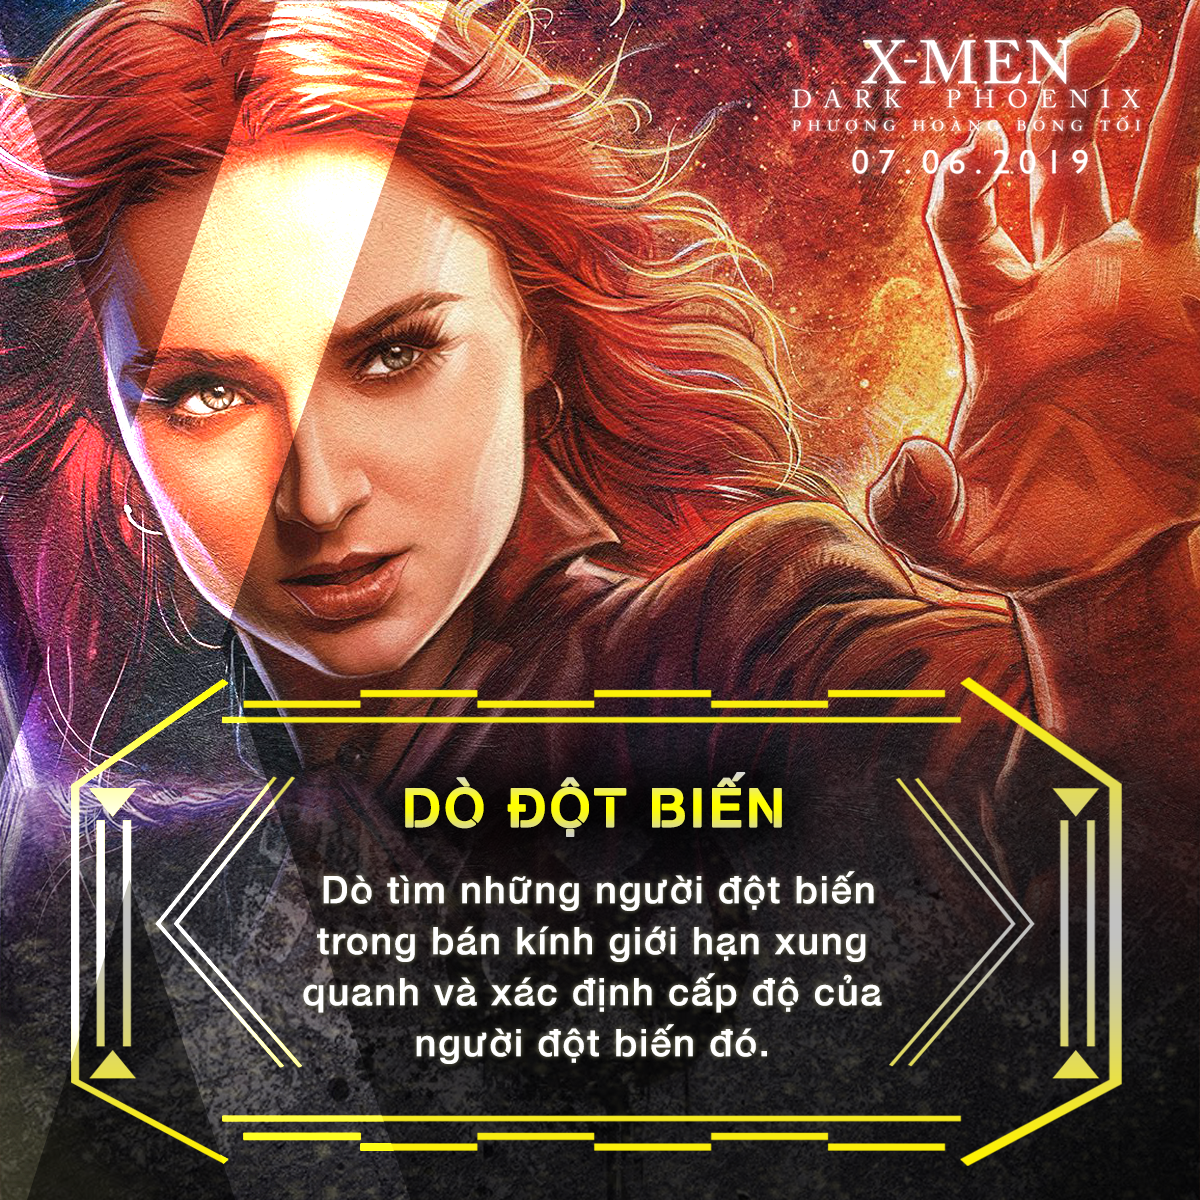 Choáng ngợp với sức mạnh bá đạo của người đẹp Jean Grey trong vũ trụ dị nhân X-Men - Ảnh 6.